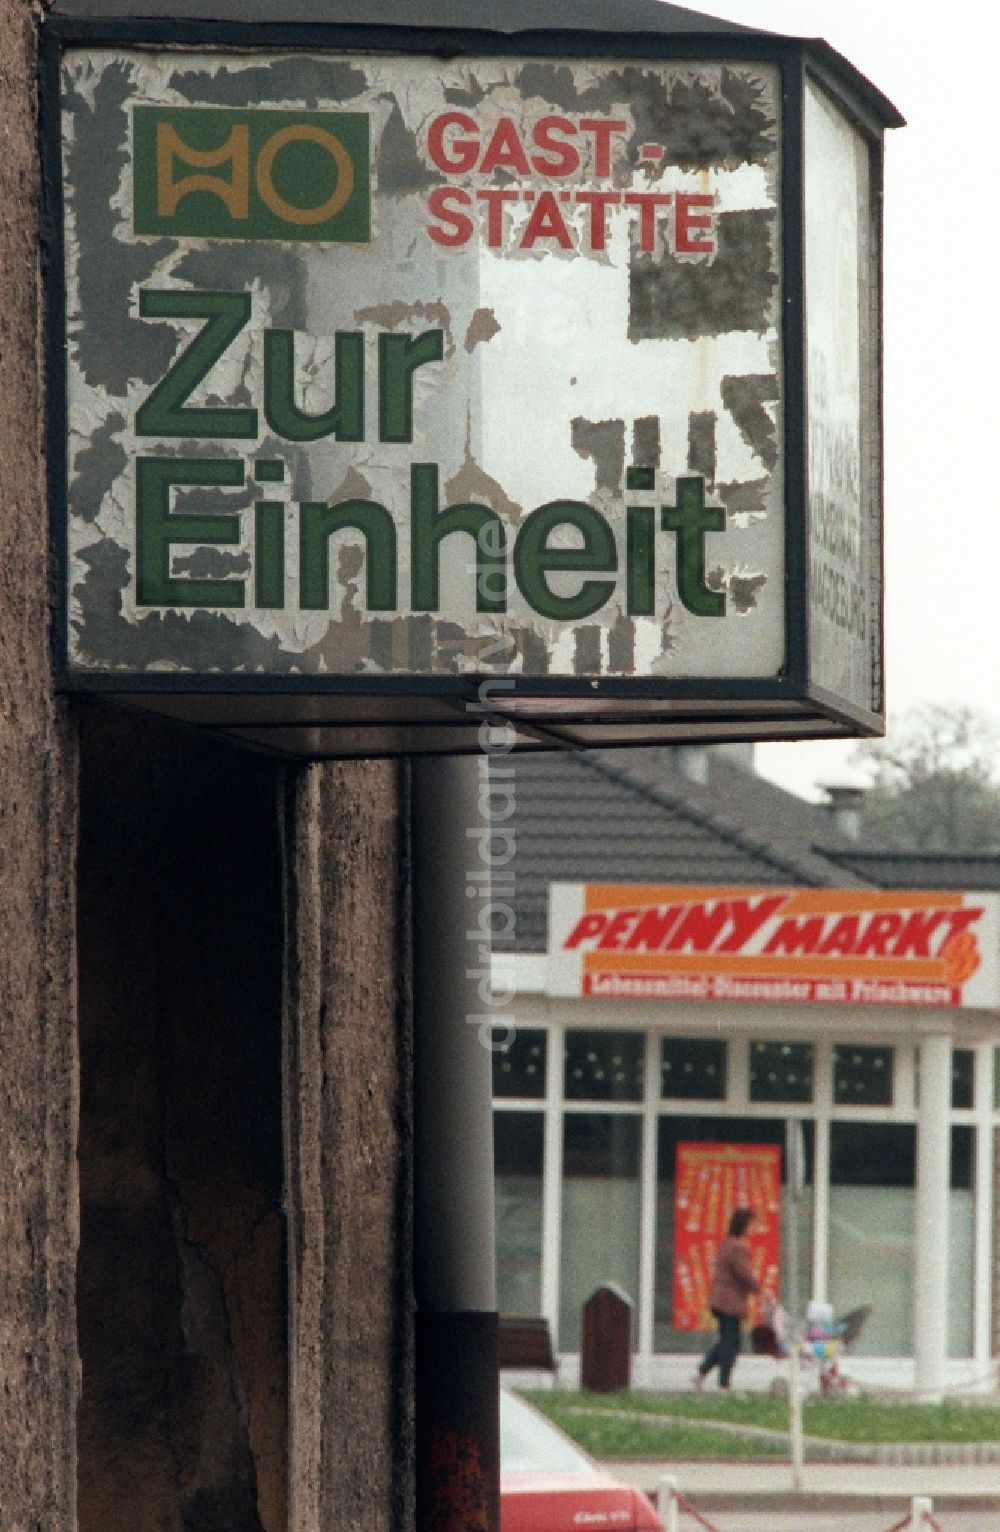 DDR-Fotoarchiv: Staßfurt - Werbeschild einer ehemaligen HO-Gaststätte Zur Einheit in Staßfurt in Sachsen-Anhalt in der DDR